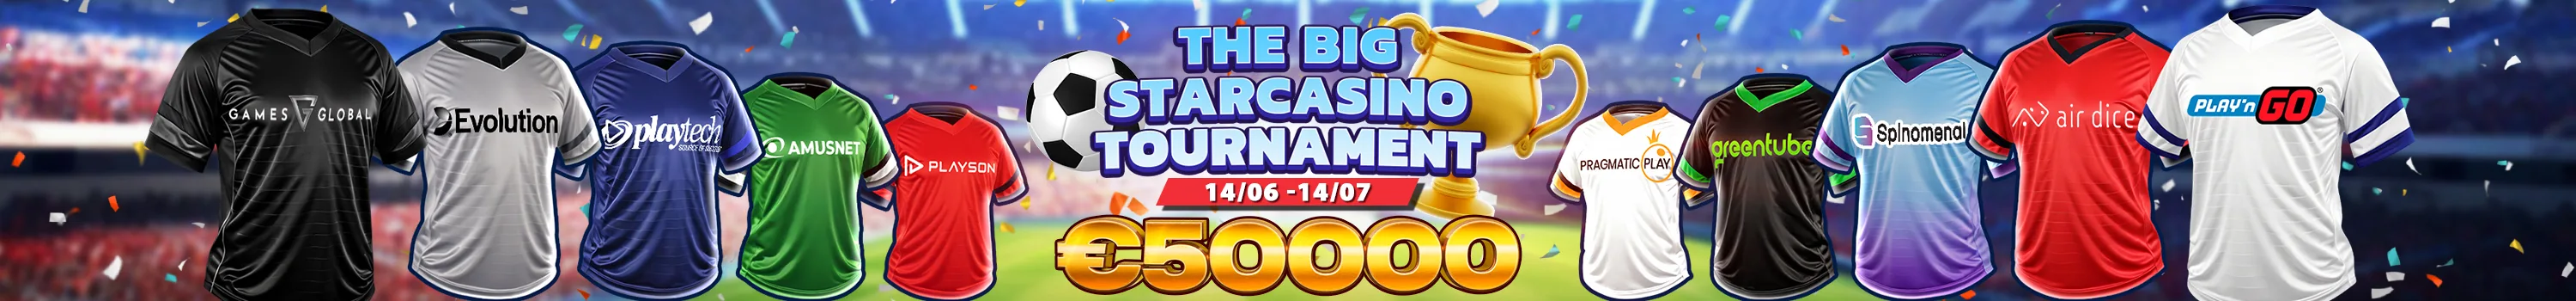 The Big Starcasino Tournament